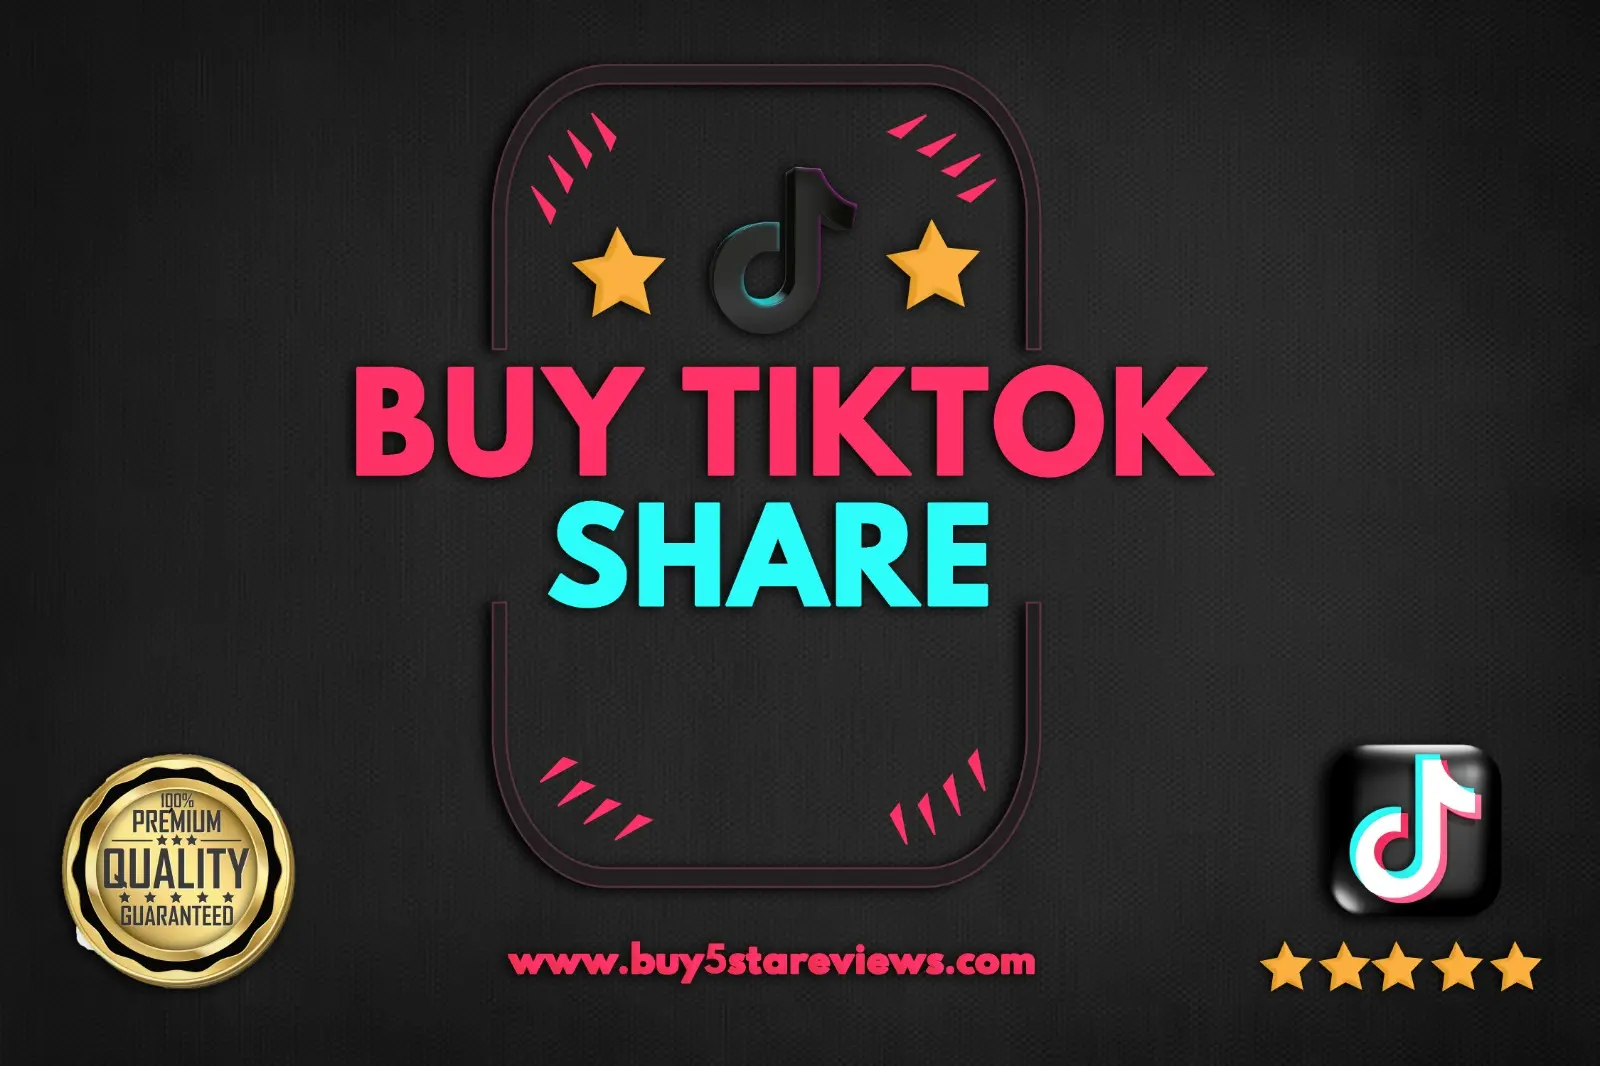 Buy TikTok Share